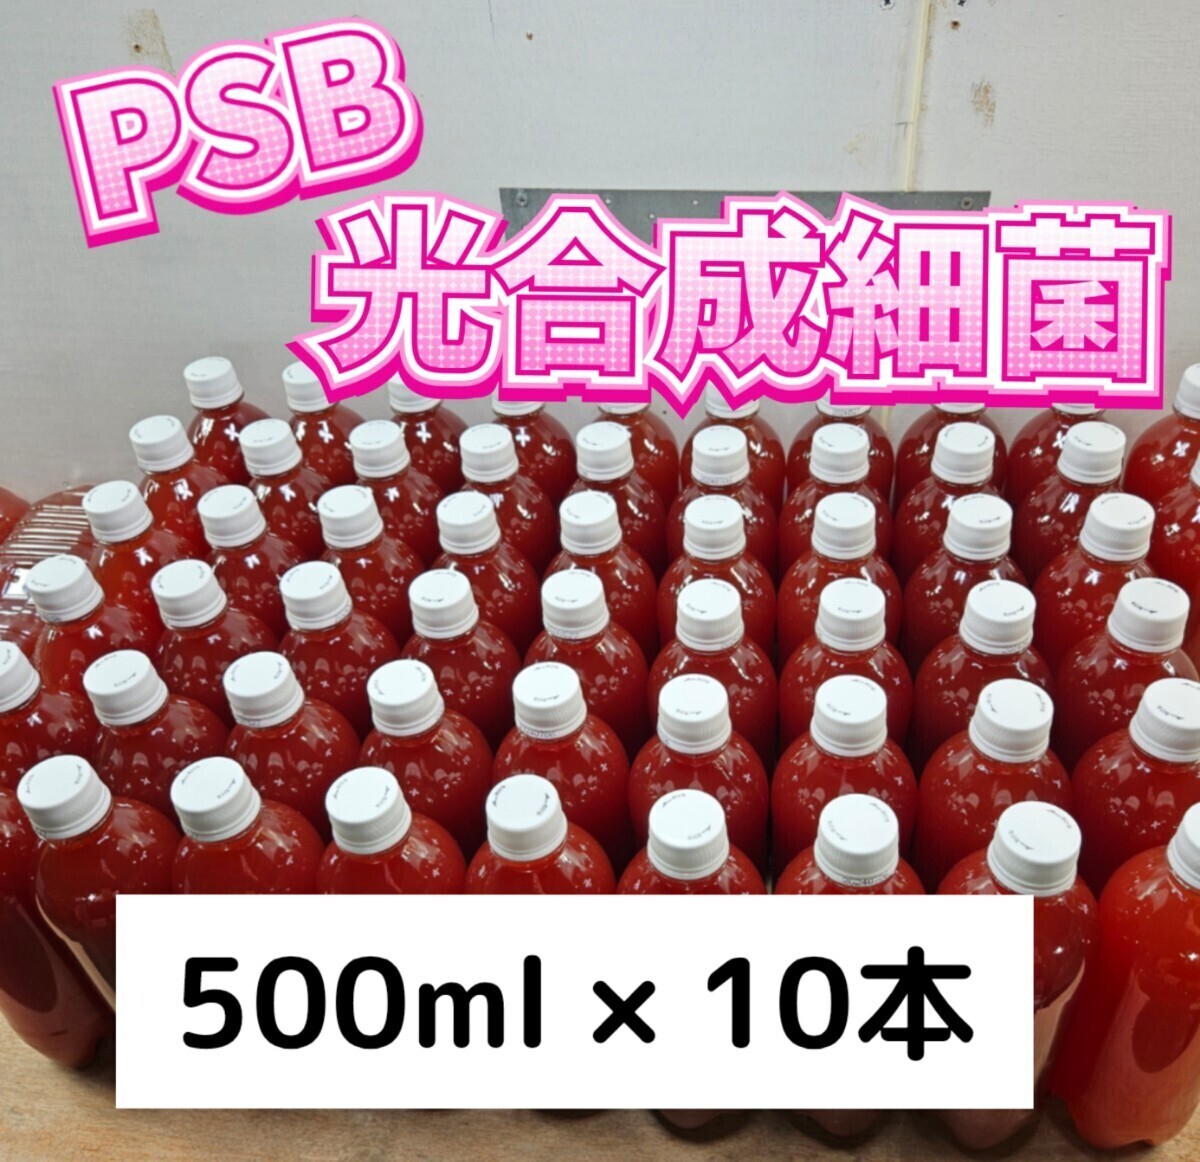 PSB【500ml×10本】光合成細菌 メダカ 水質改善 バクテリア エサ